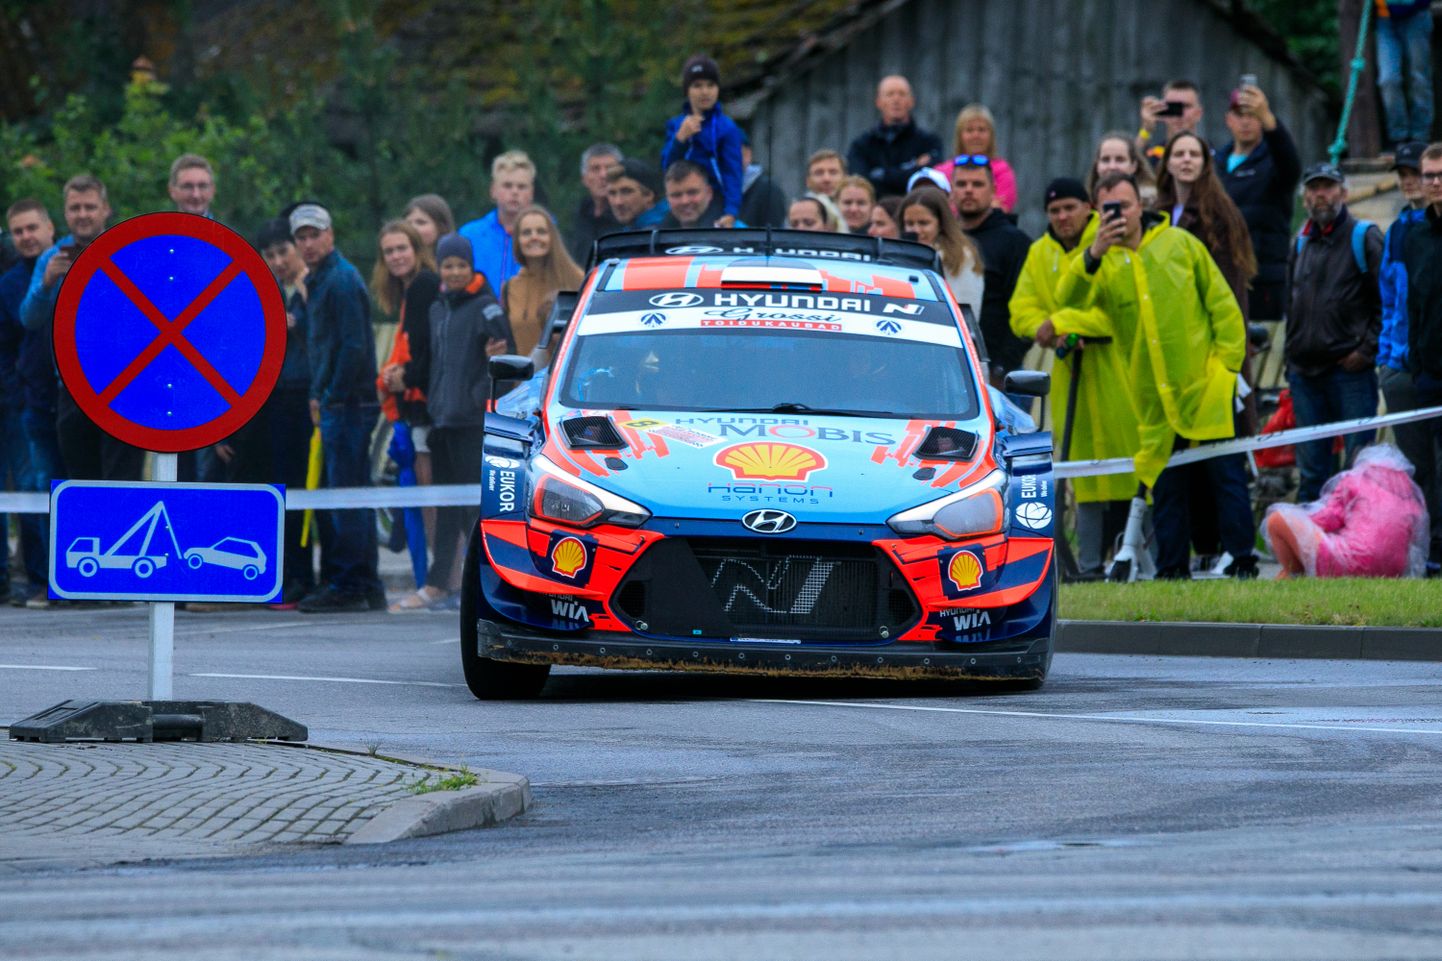 Kodune rallihooaeg algas täna Lääne-Virumaa teedel: Eesti meistrivõistluste esimese etapina sõidetakse Grossi Toidukaubad Viru Rally.